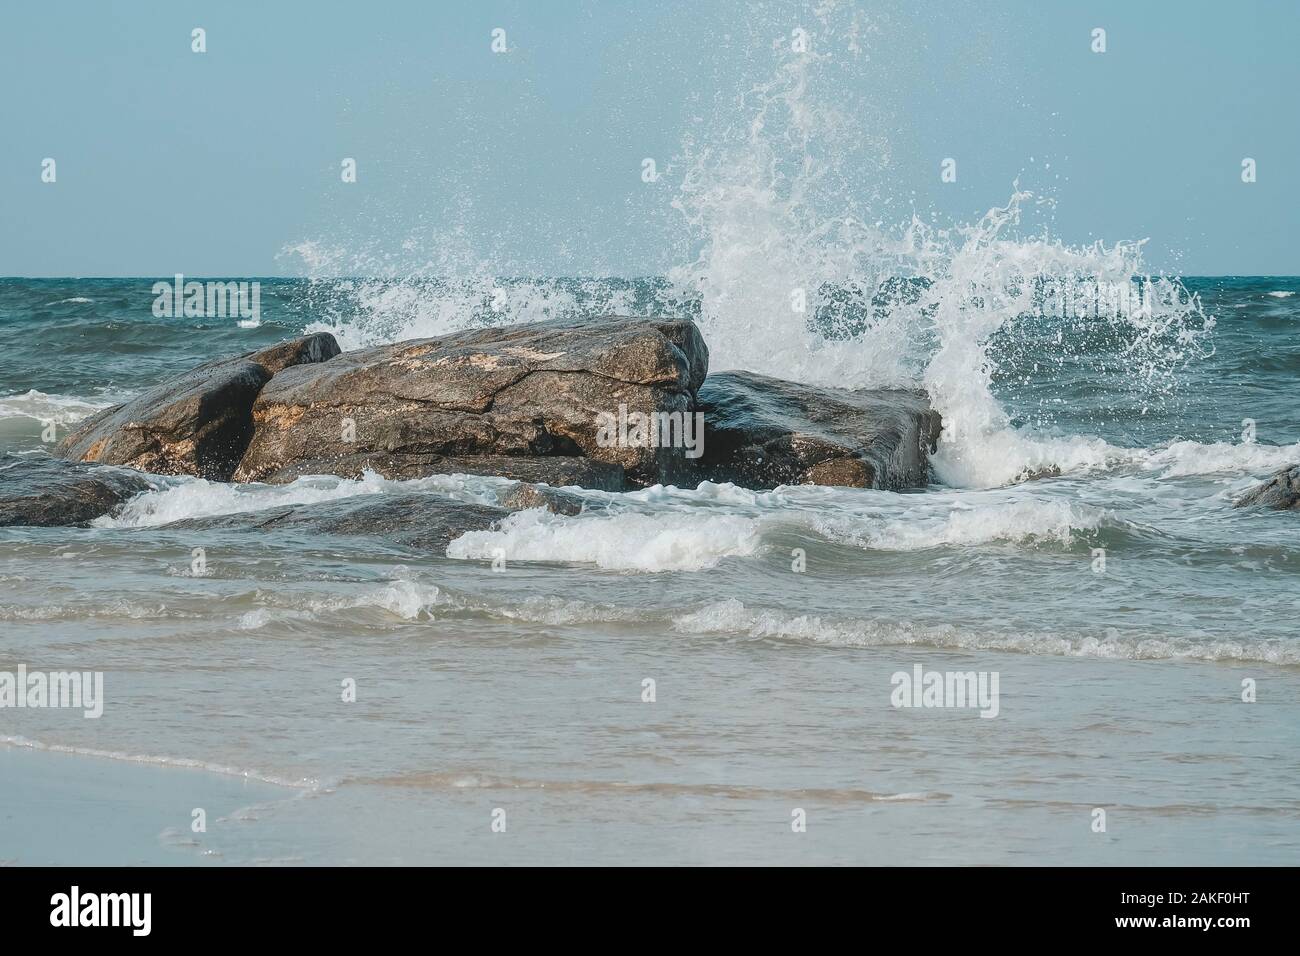 Sea wave e schizzi colpisce la pietra sulla spiaggia di Hua Hin, Prachuap Khiri Khan, Thailandia. Toni pastello. Foto Stock